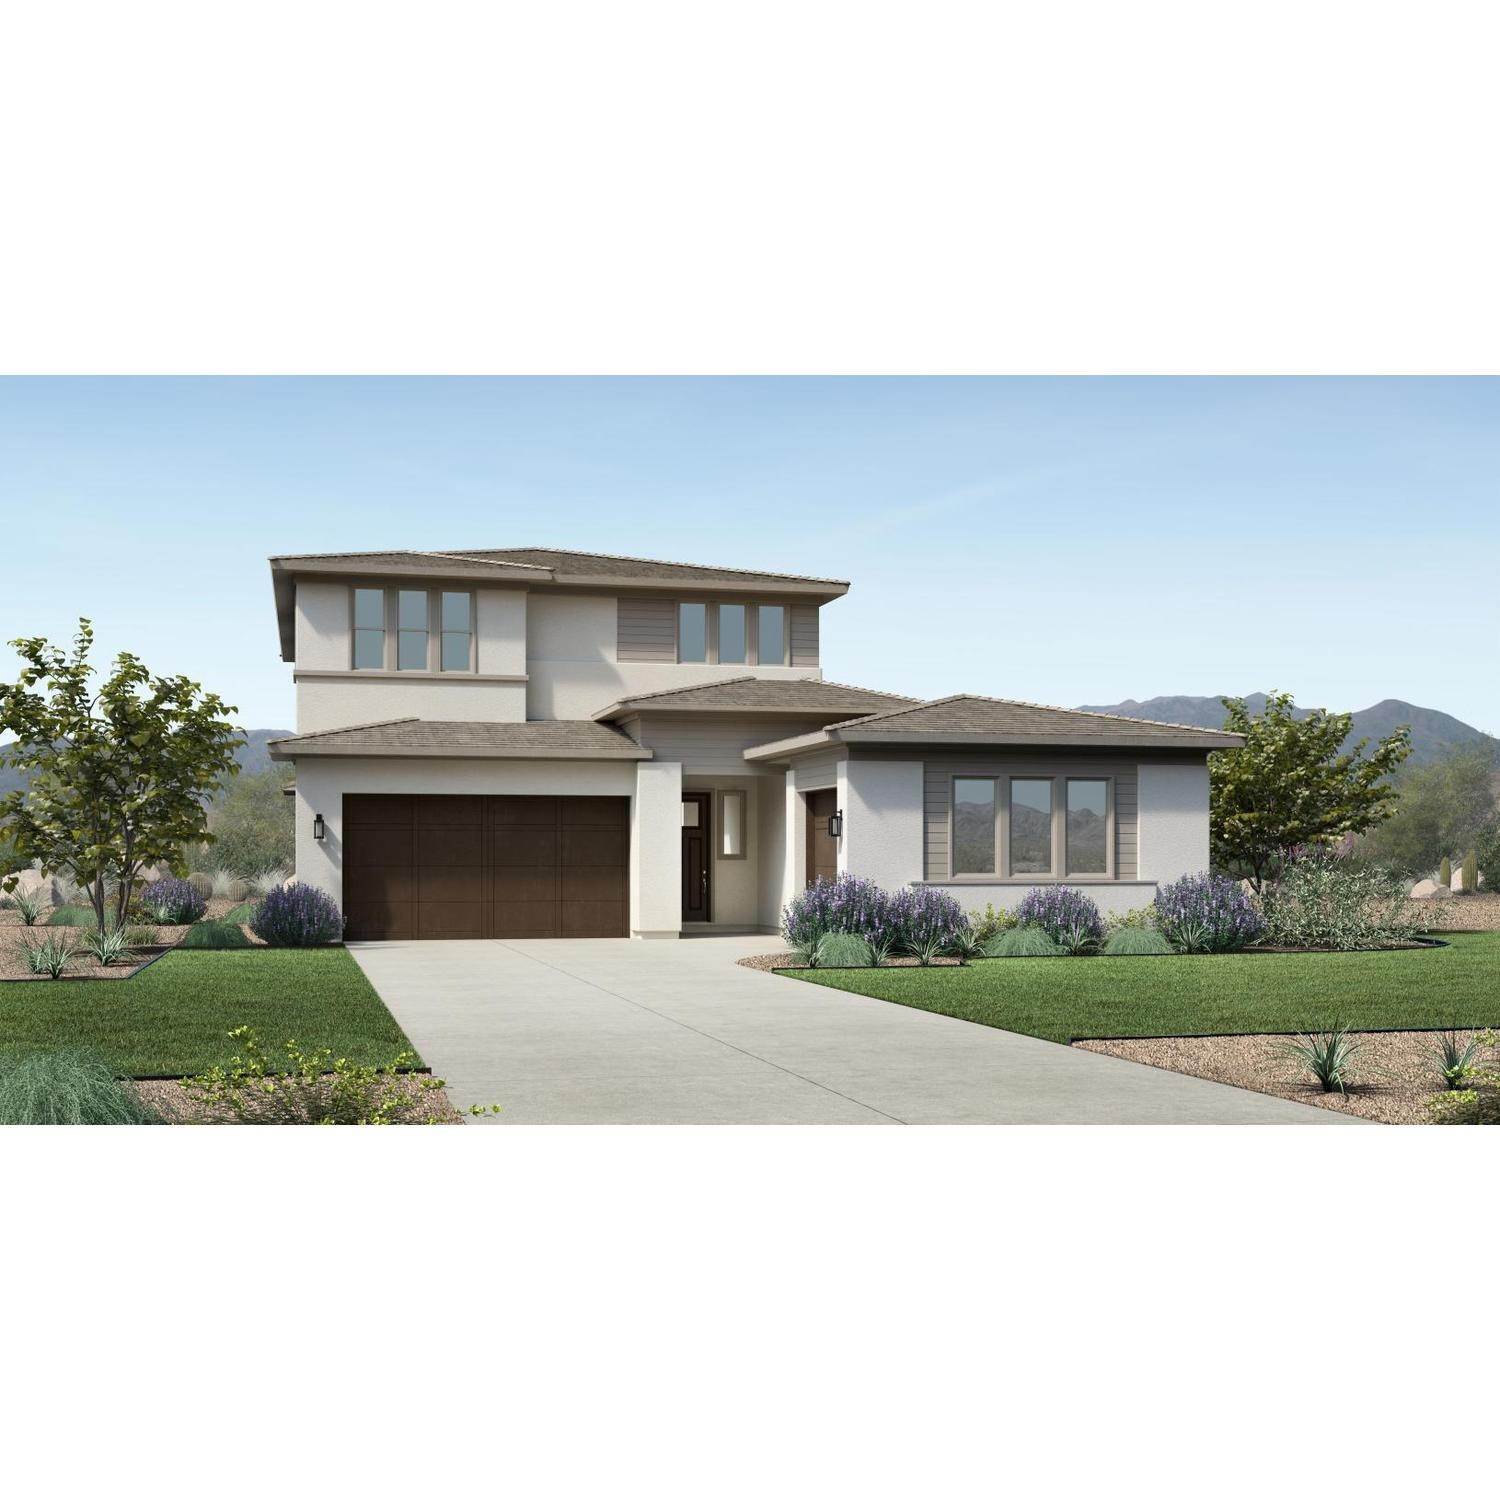 Einfamilienhaus für Verkauf beim Toll Brothers At Cadence - Montage Collection 10108 E Tesla Ave, Mesa, AZ 85212